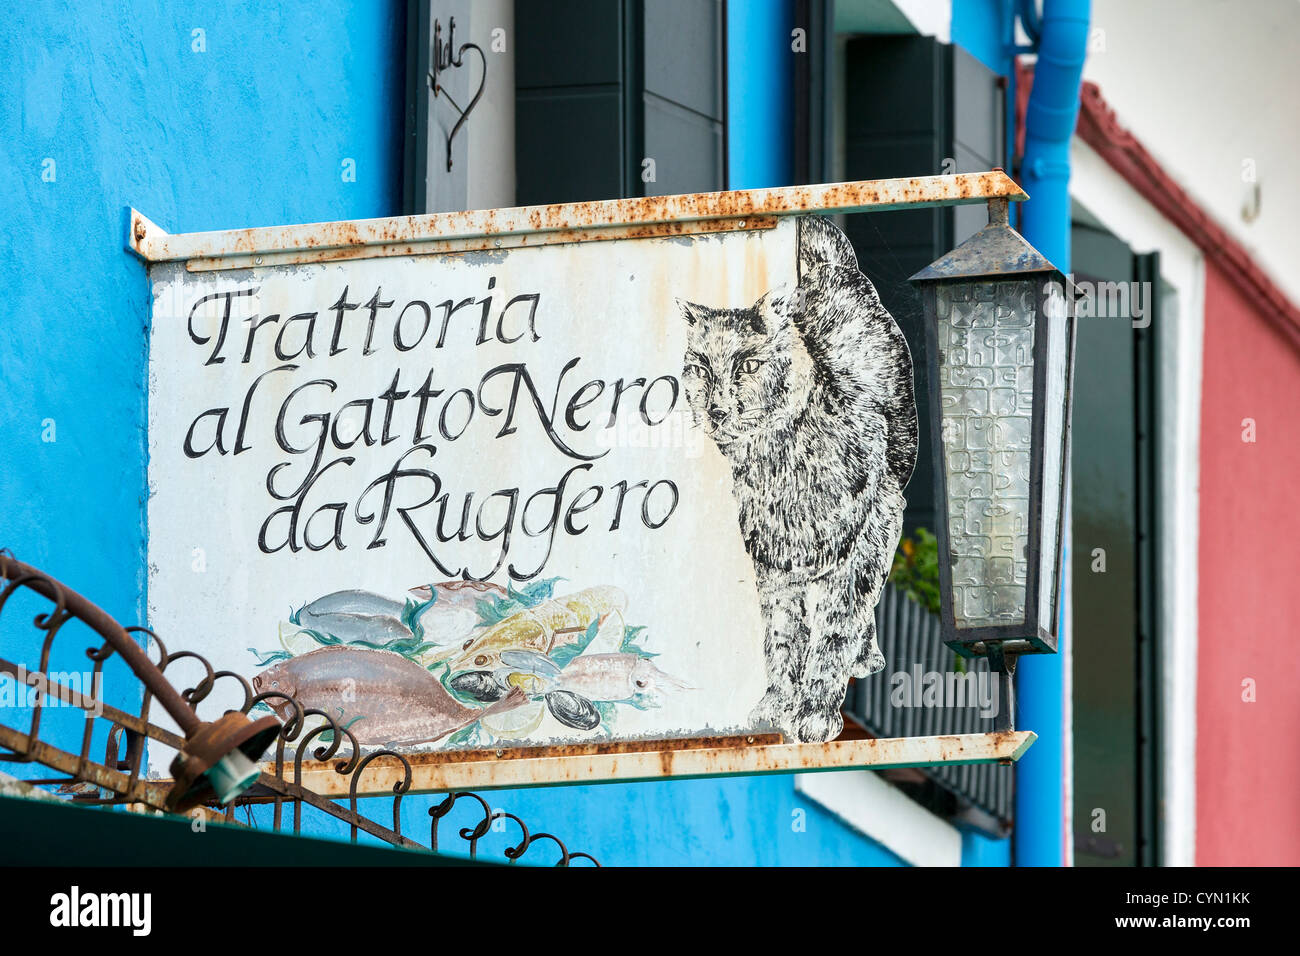 Sign advertising the Trattoria al Gatto Nero da Ruggero, a fish restaurant in Burano, Venice Stock Photo